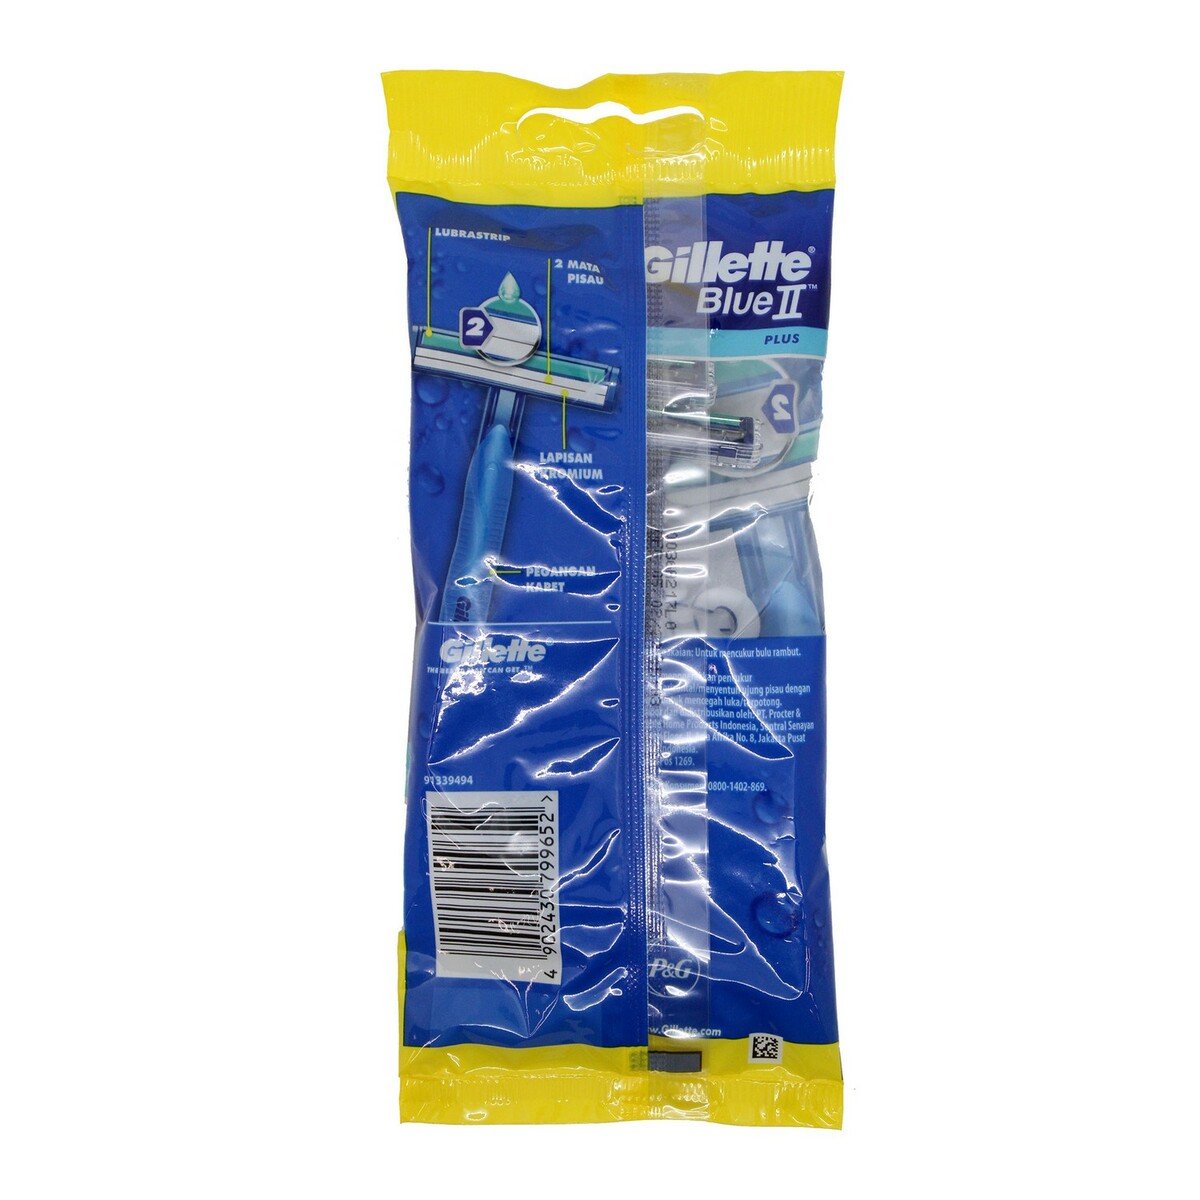 Gillette Blue 2Plus 3 + 1